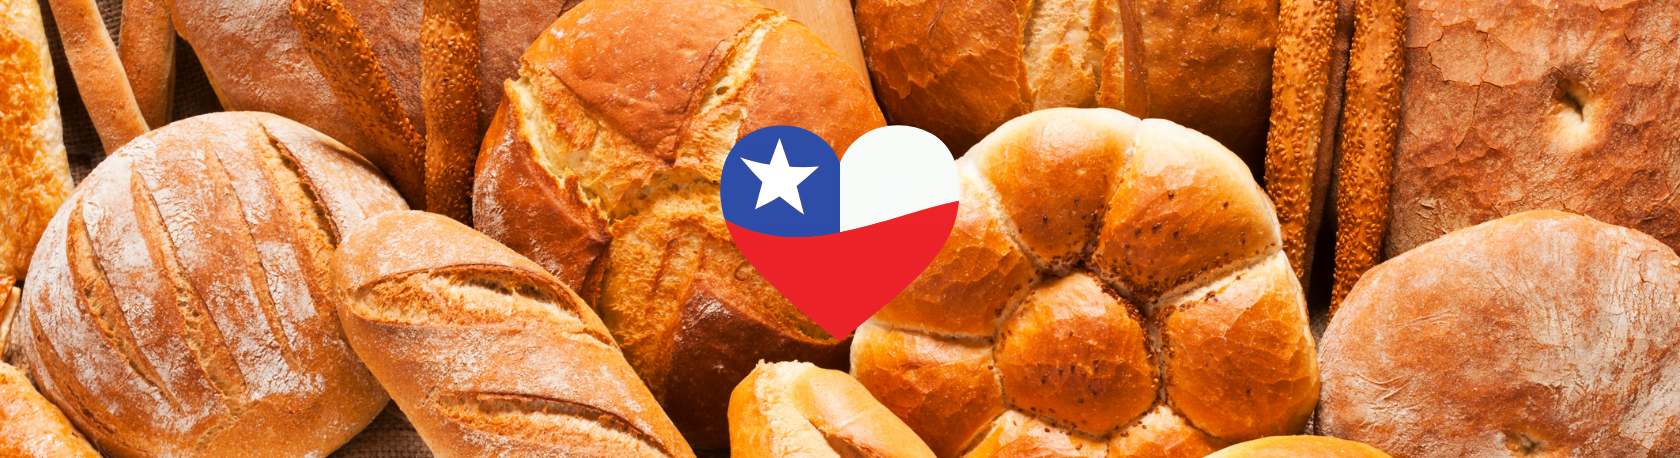 ¿Sabías que Chile es el segundo consumidor de pan en el mundo?